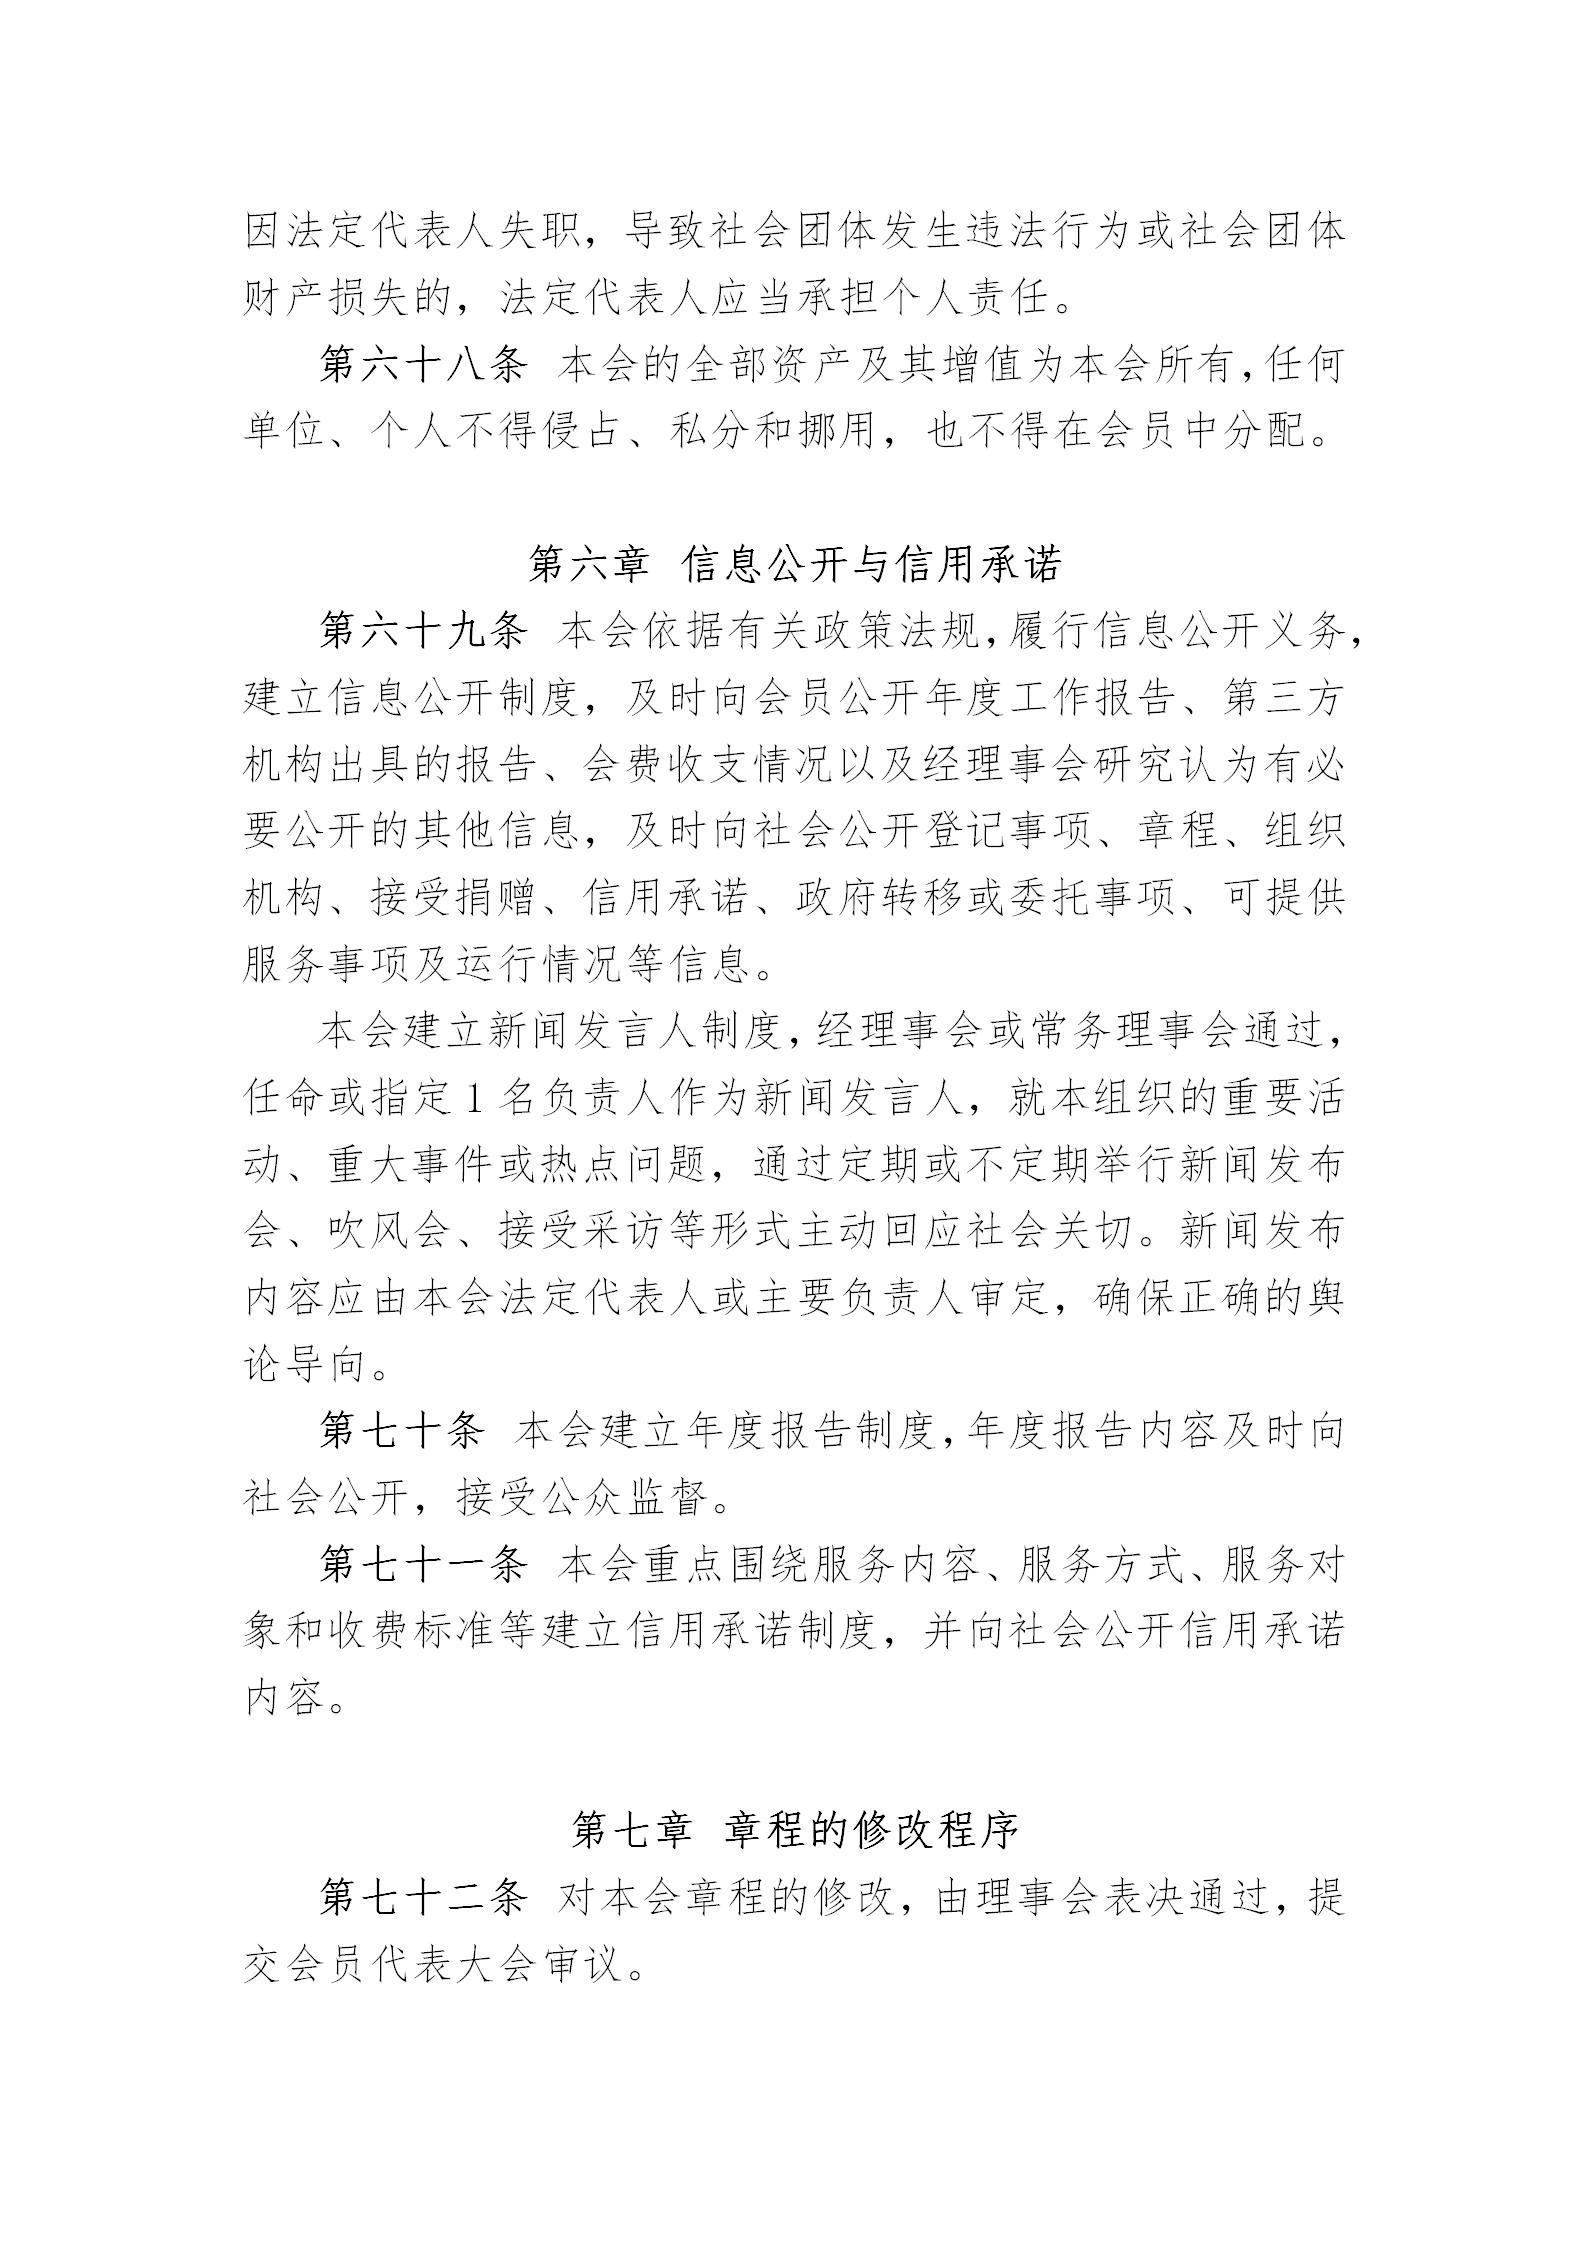 中国演艺设备技术协会章程(定稿)_17.jpg